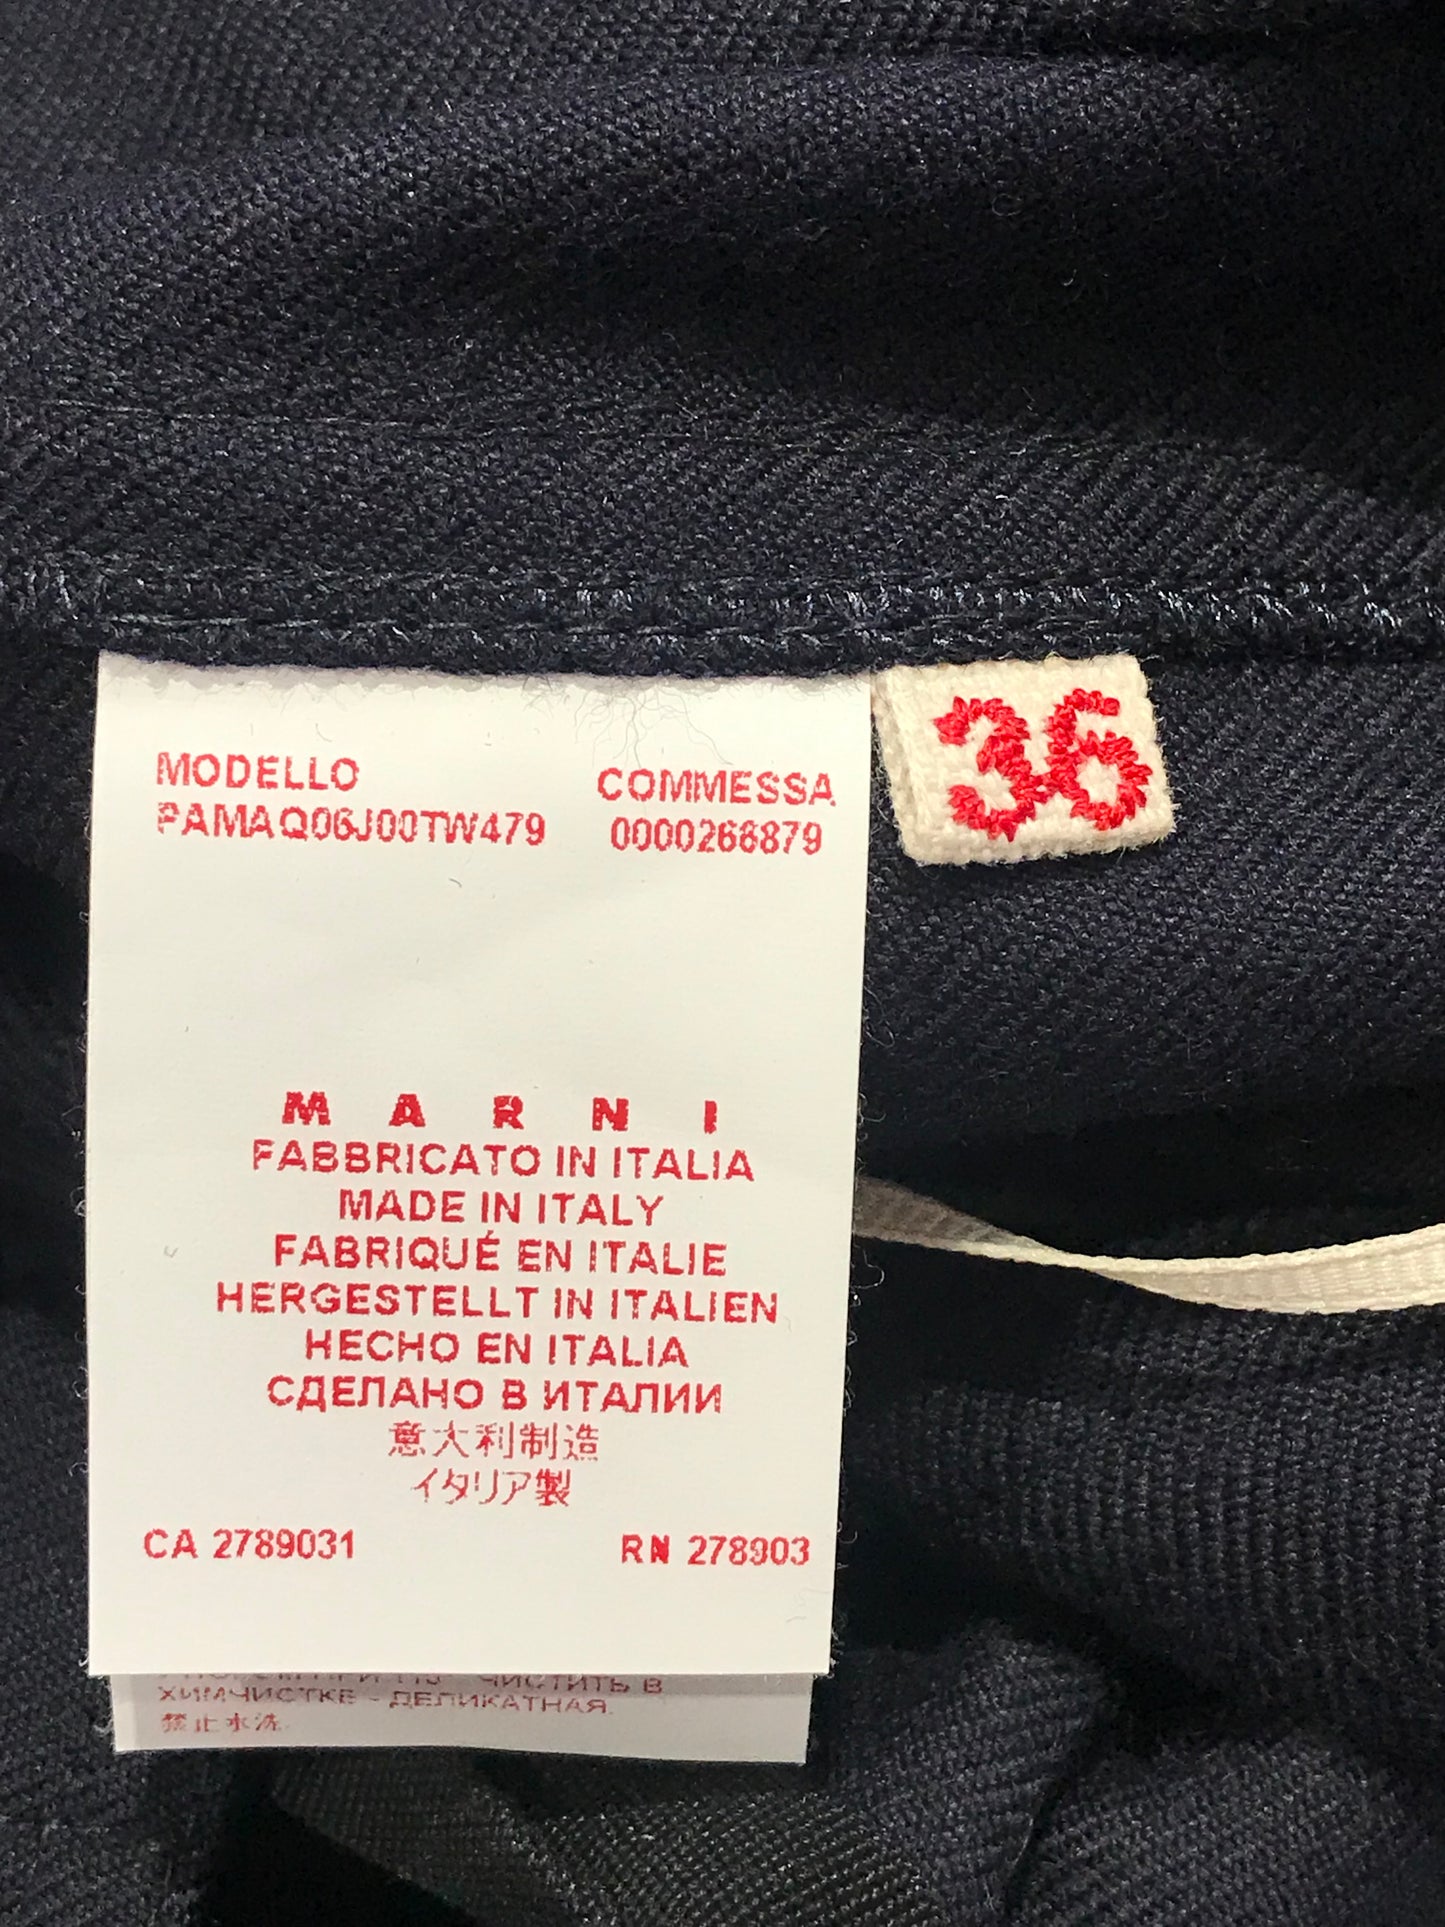 Pantalon Marni bleu marine T.34